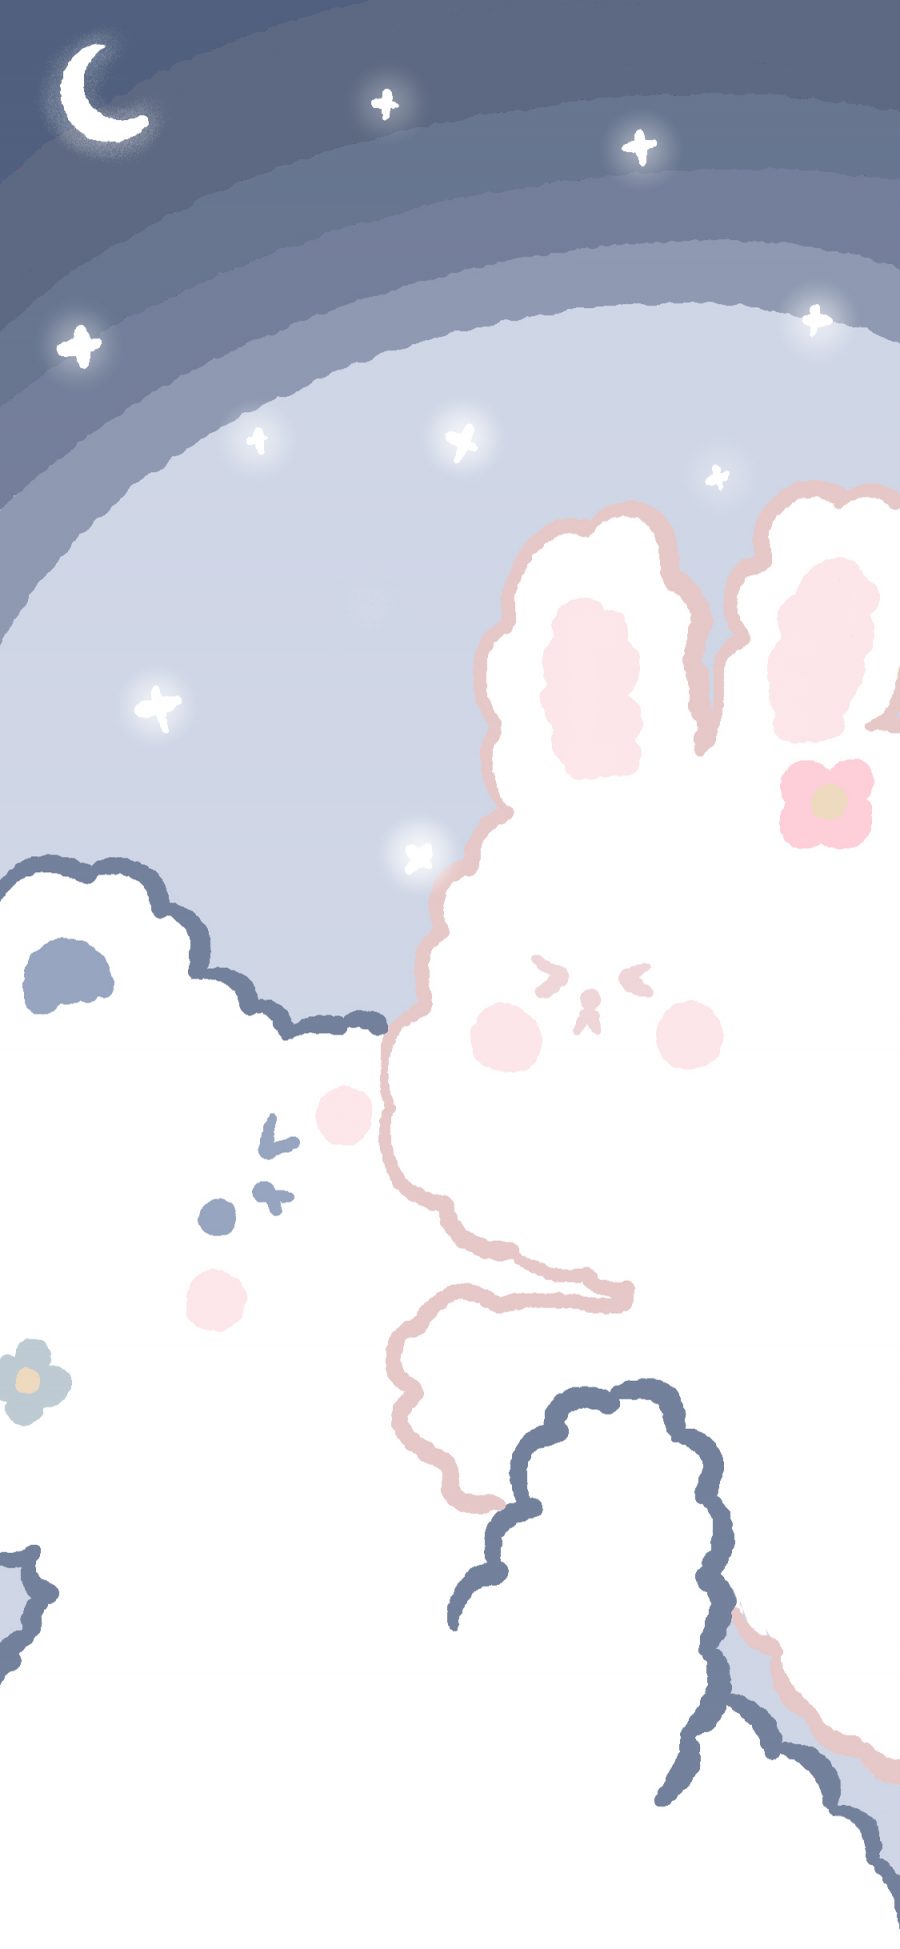 [2436×1125]熊 兔子 月亮 可爱 萌 苹果手机动漫壁纸图片